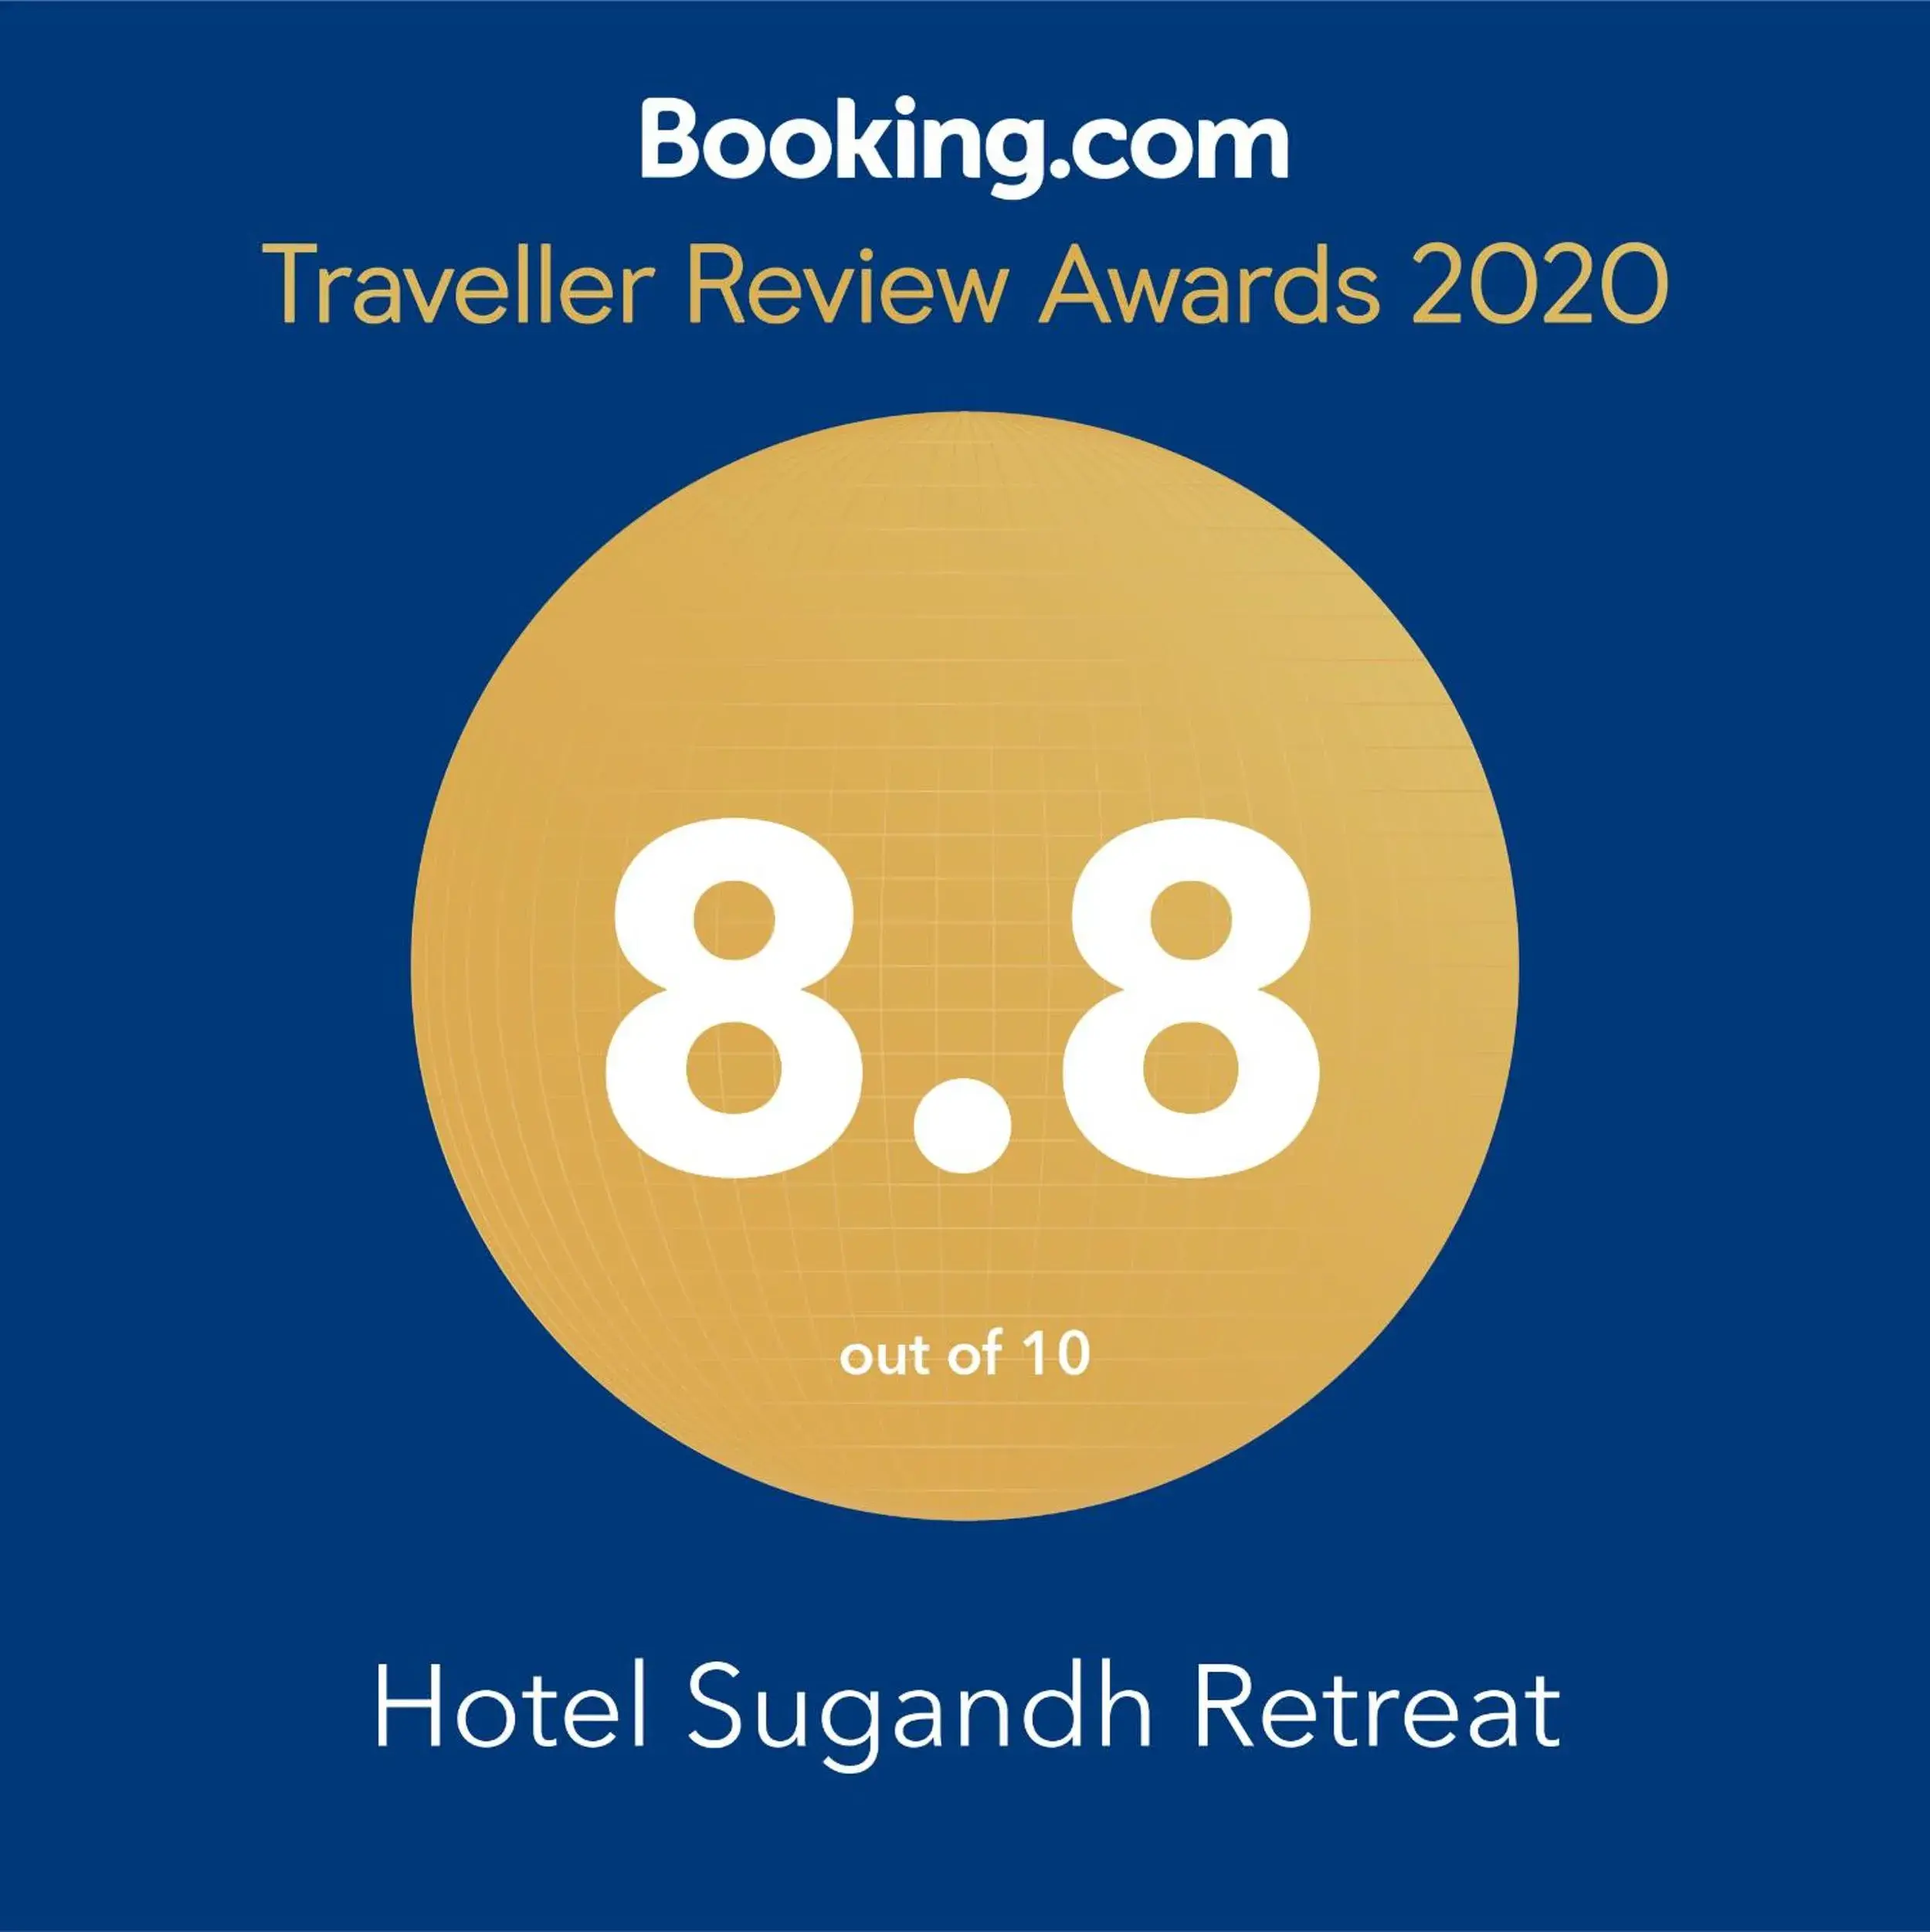 Certificate/Award in Hotel Sugandh Retreat